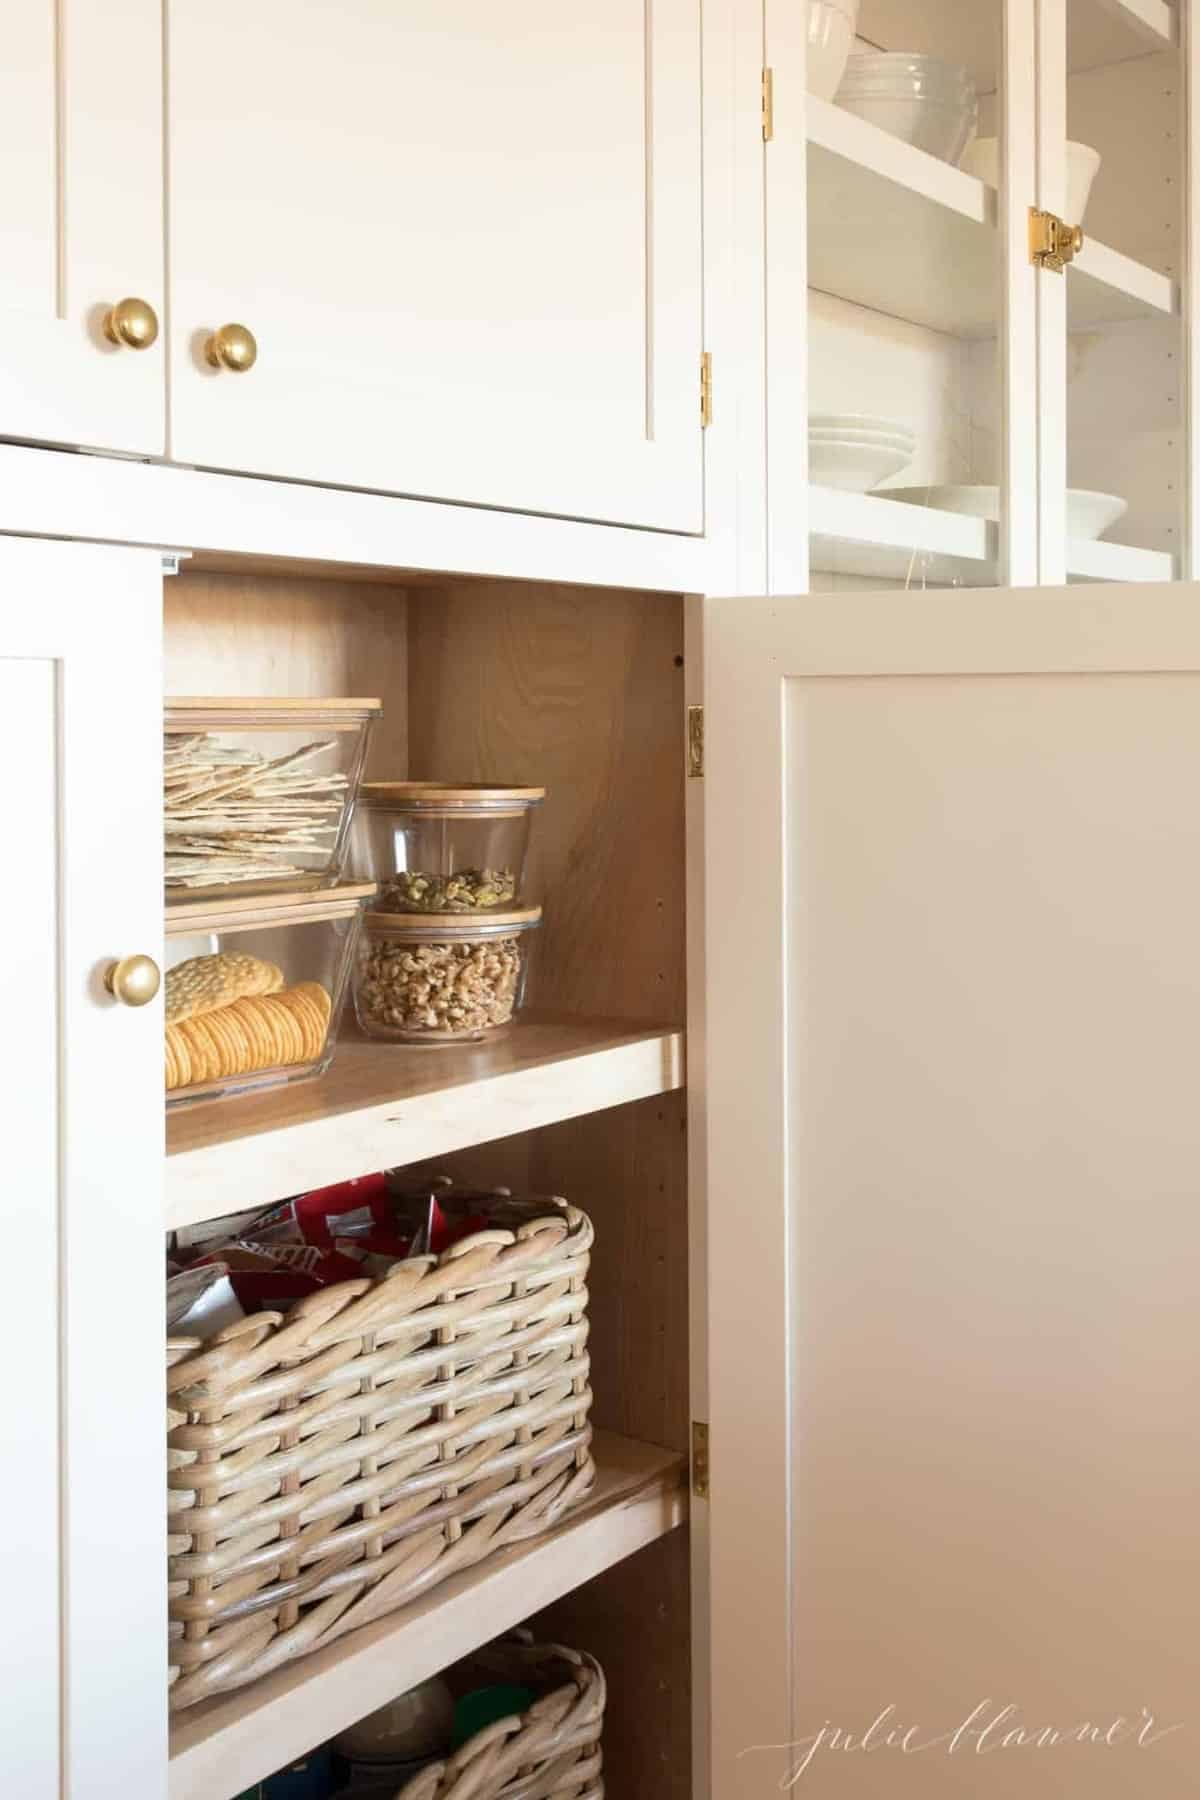 奶油色的厨房橱柜，黄铜的橱柜门把手。